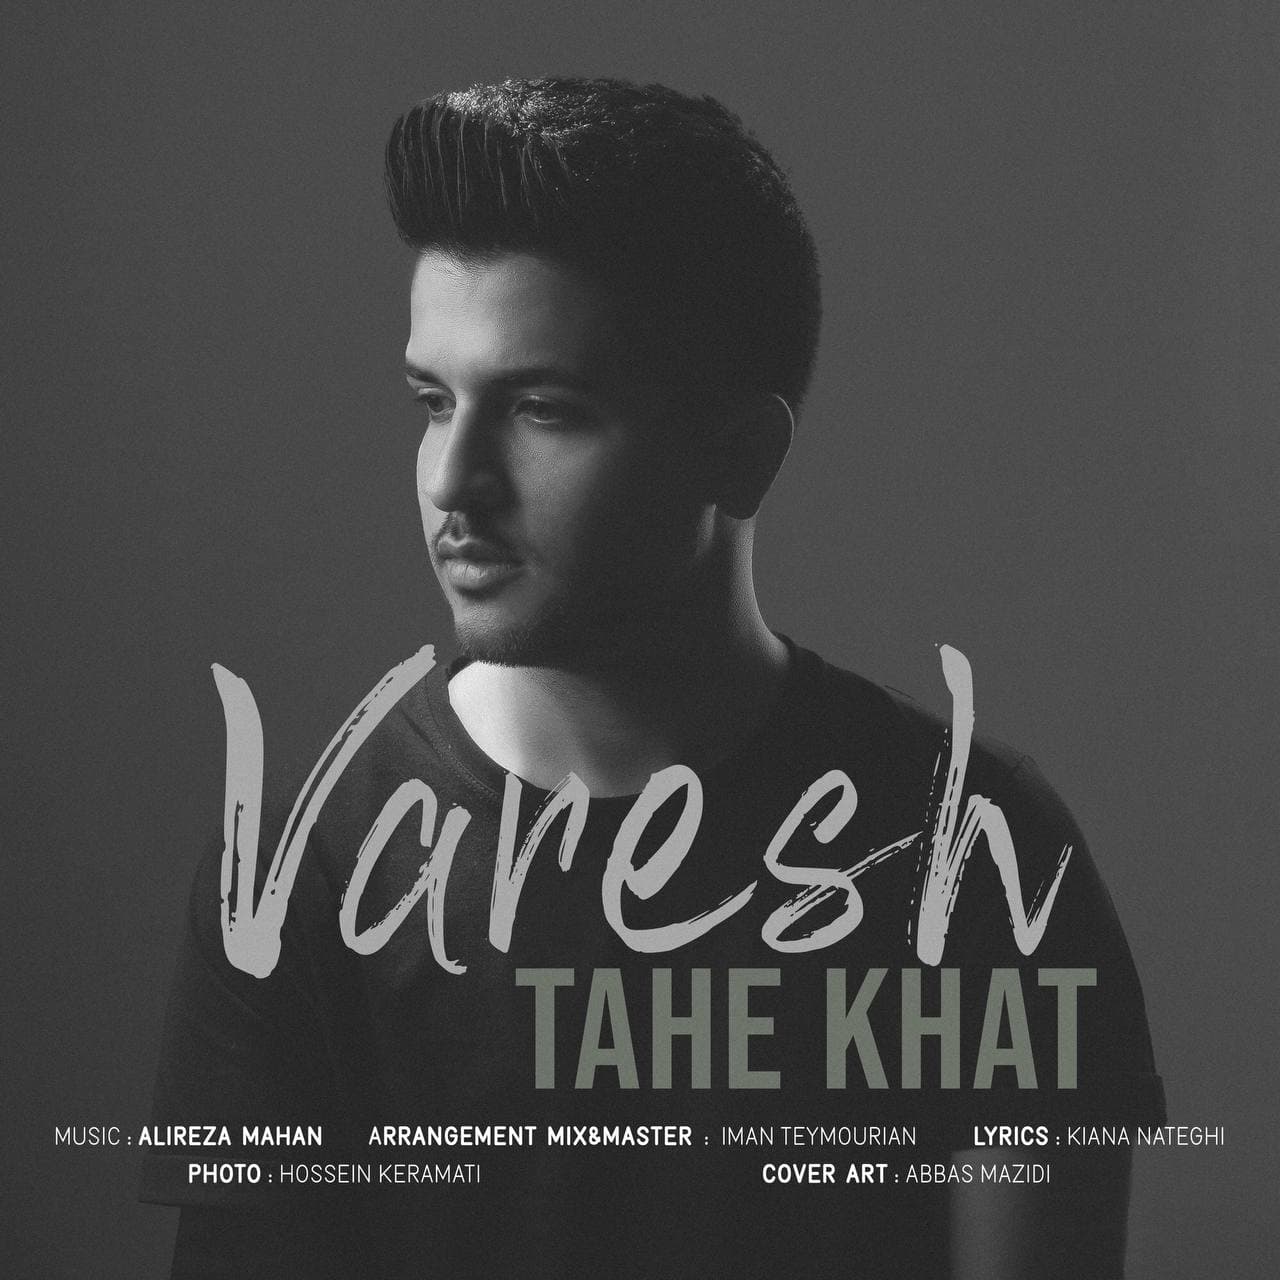 Varesh – Tahe Khat